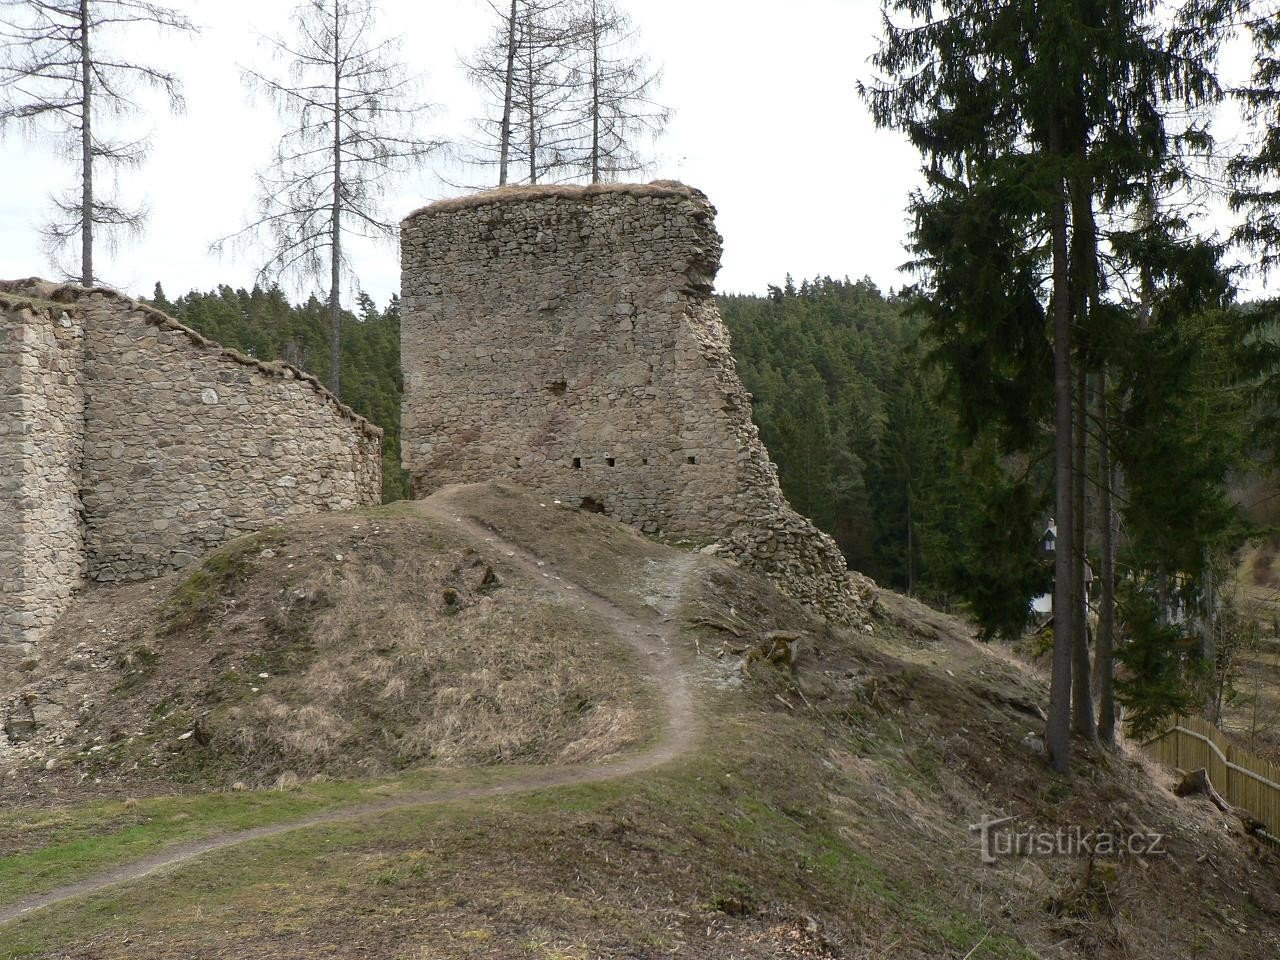 Porešín, pałac od strony północnej